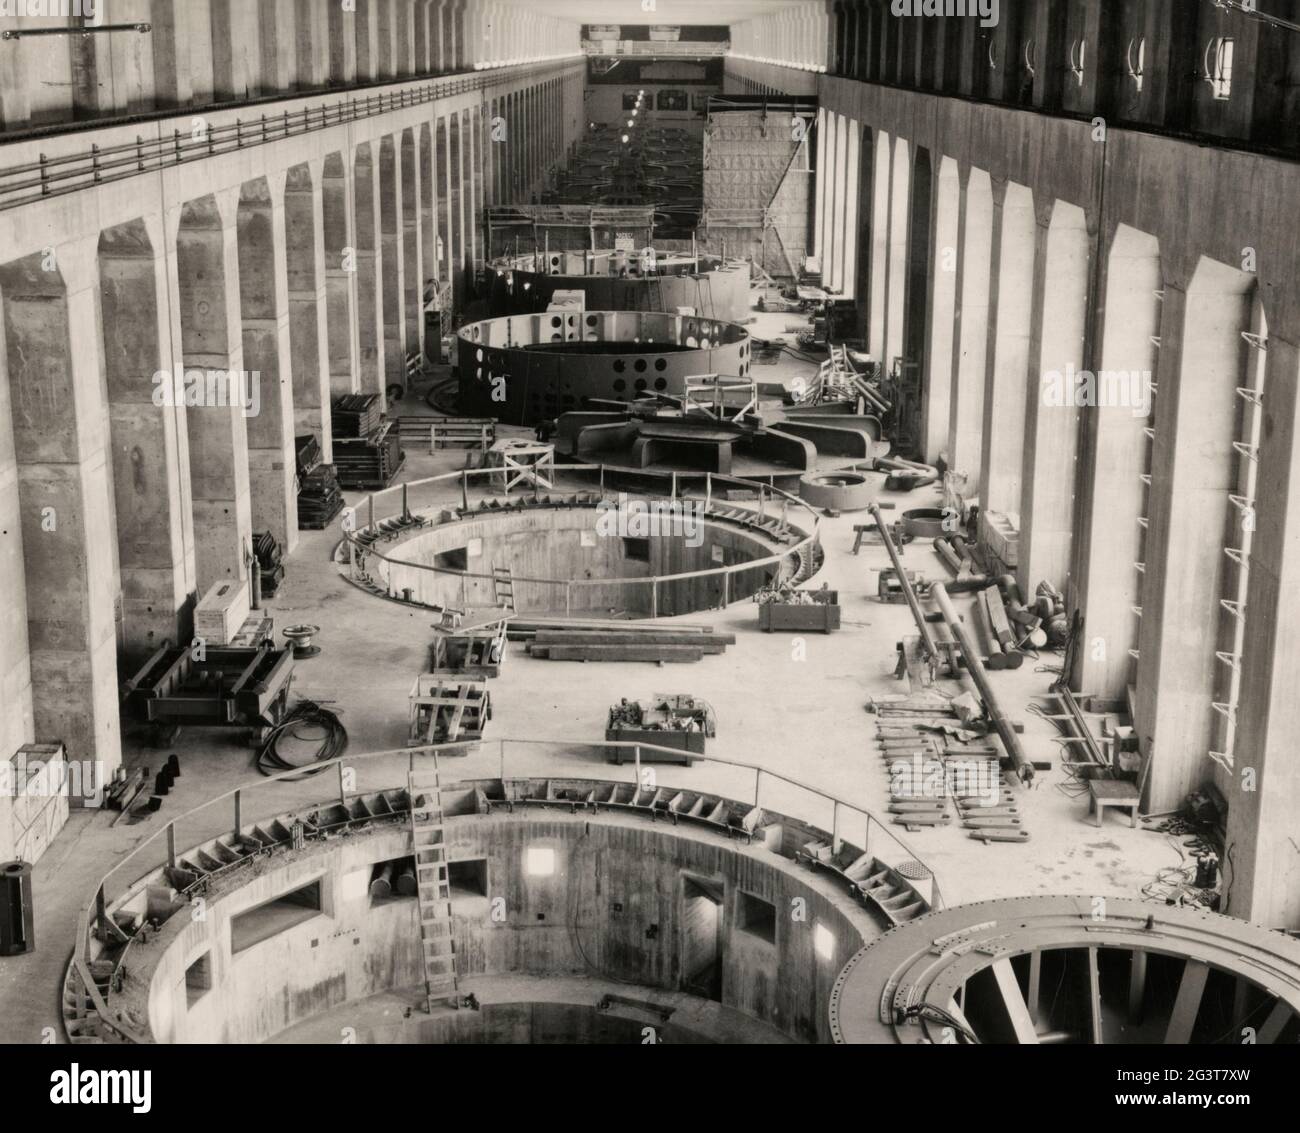 Vue intérieure de la centrale électrique du barrage de Bonneville sur la rivière Columbia entre le comté de Multnomah, Oregon et le comté de Skamania, Washington, montrant la construction, vers 1935 Banque D'Images